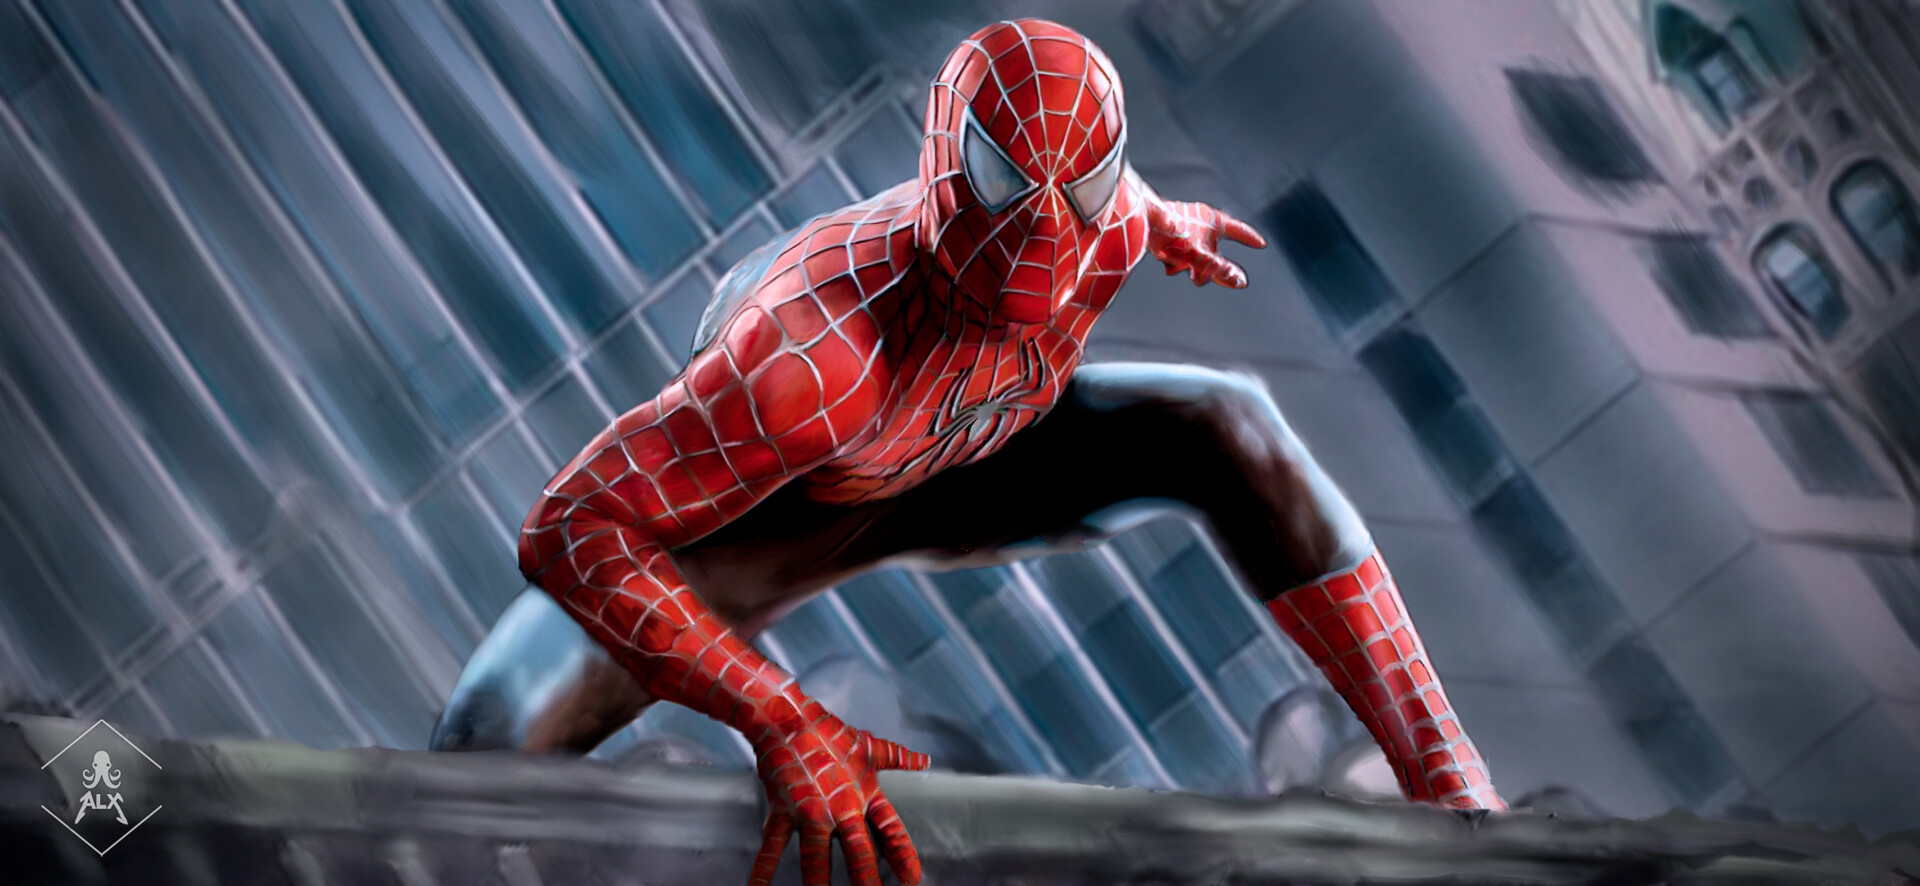 Sürprizbozan: Tüm MCU Spider-Man kostümleri | Technopat Sosyal